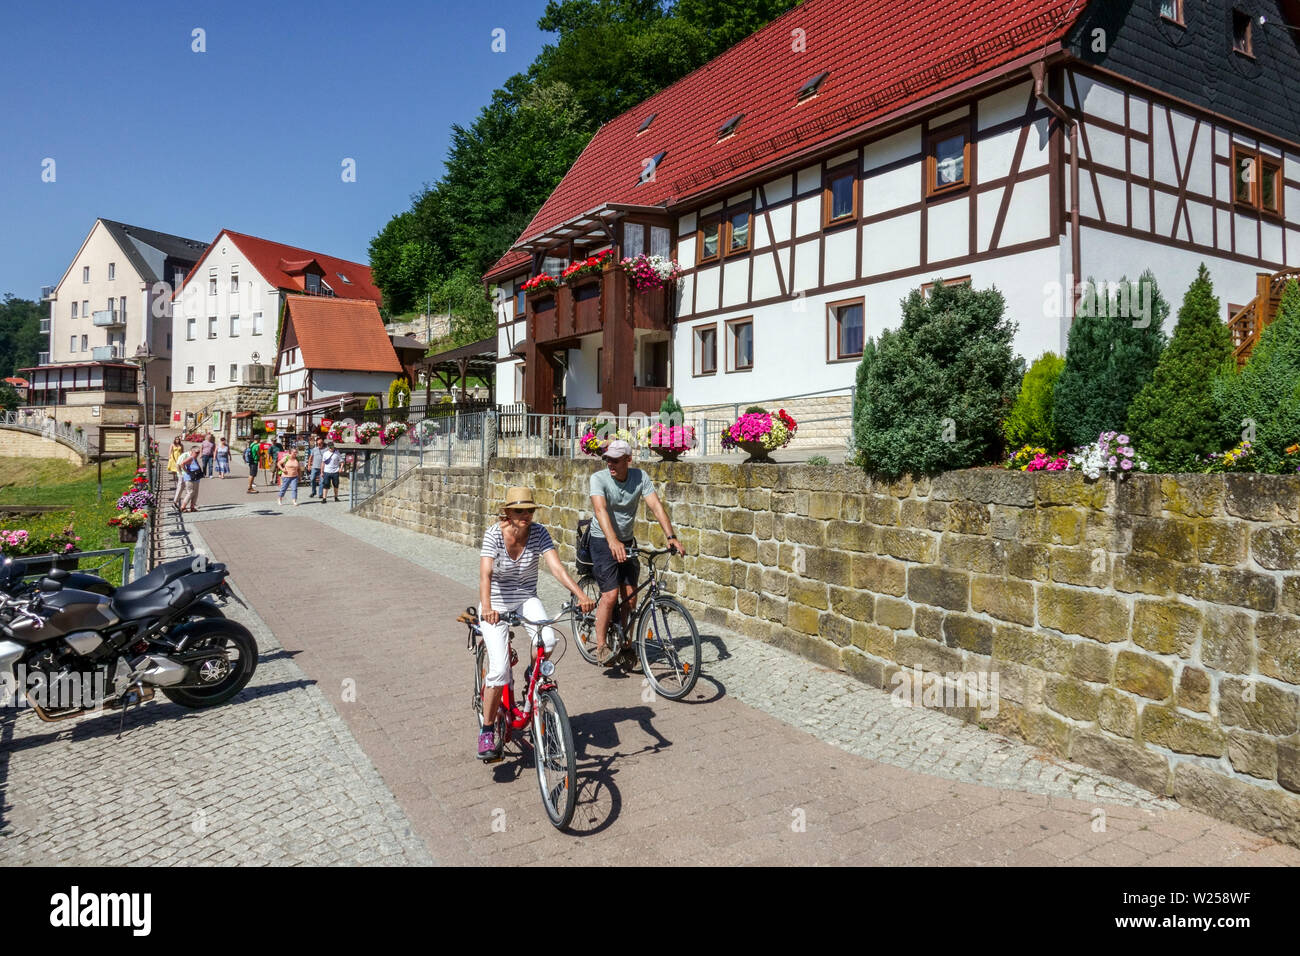 Touristen auf Fahrrädern Kurort Rathen Fachwerkhäuser Sächsische Schweiz Deutschland Radfahren Elbtal Gebäude Menschen Radfahren Bikes Paar Biker Stockfoto